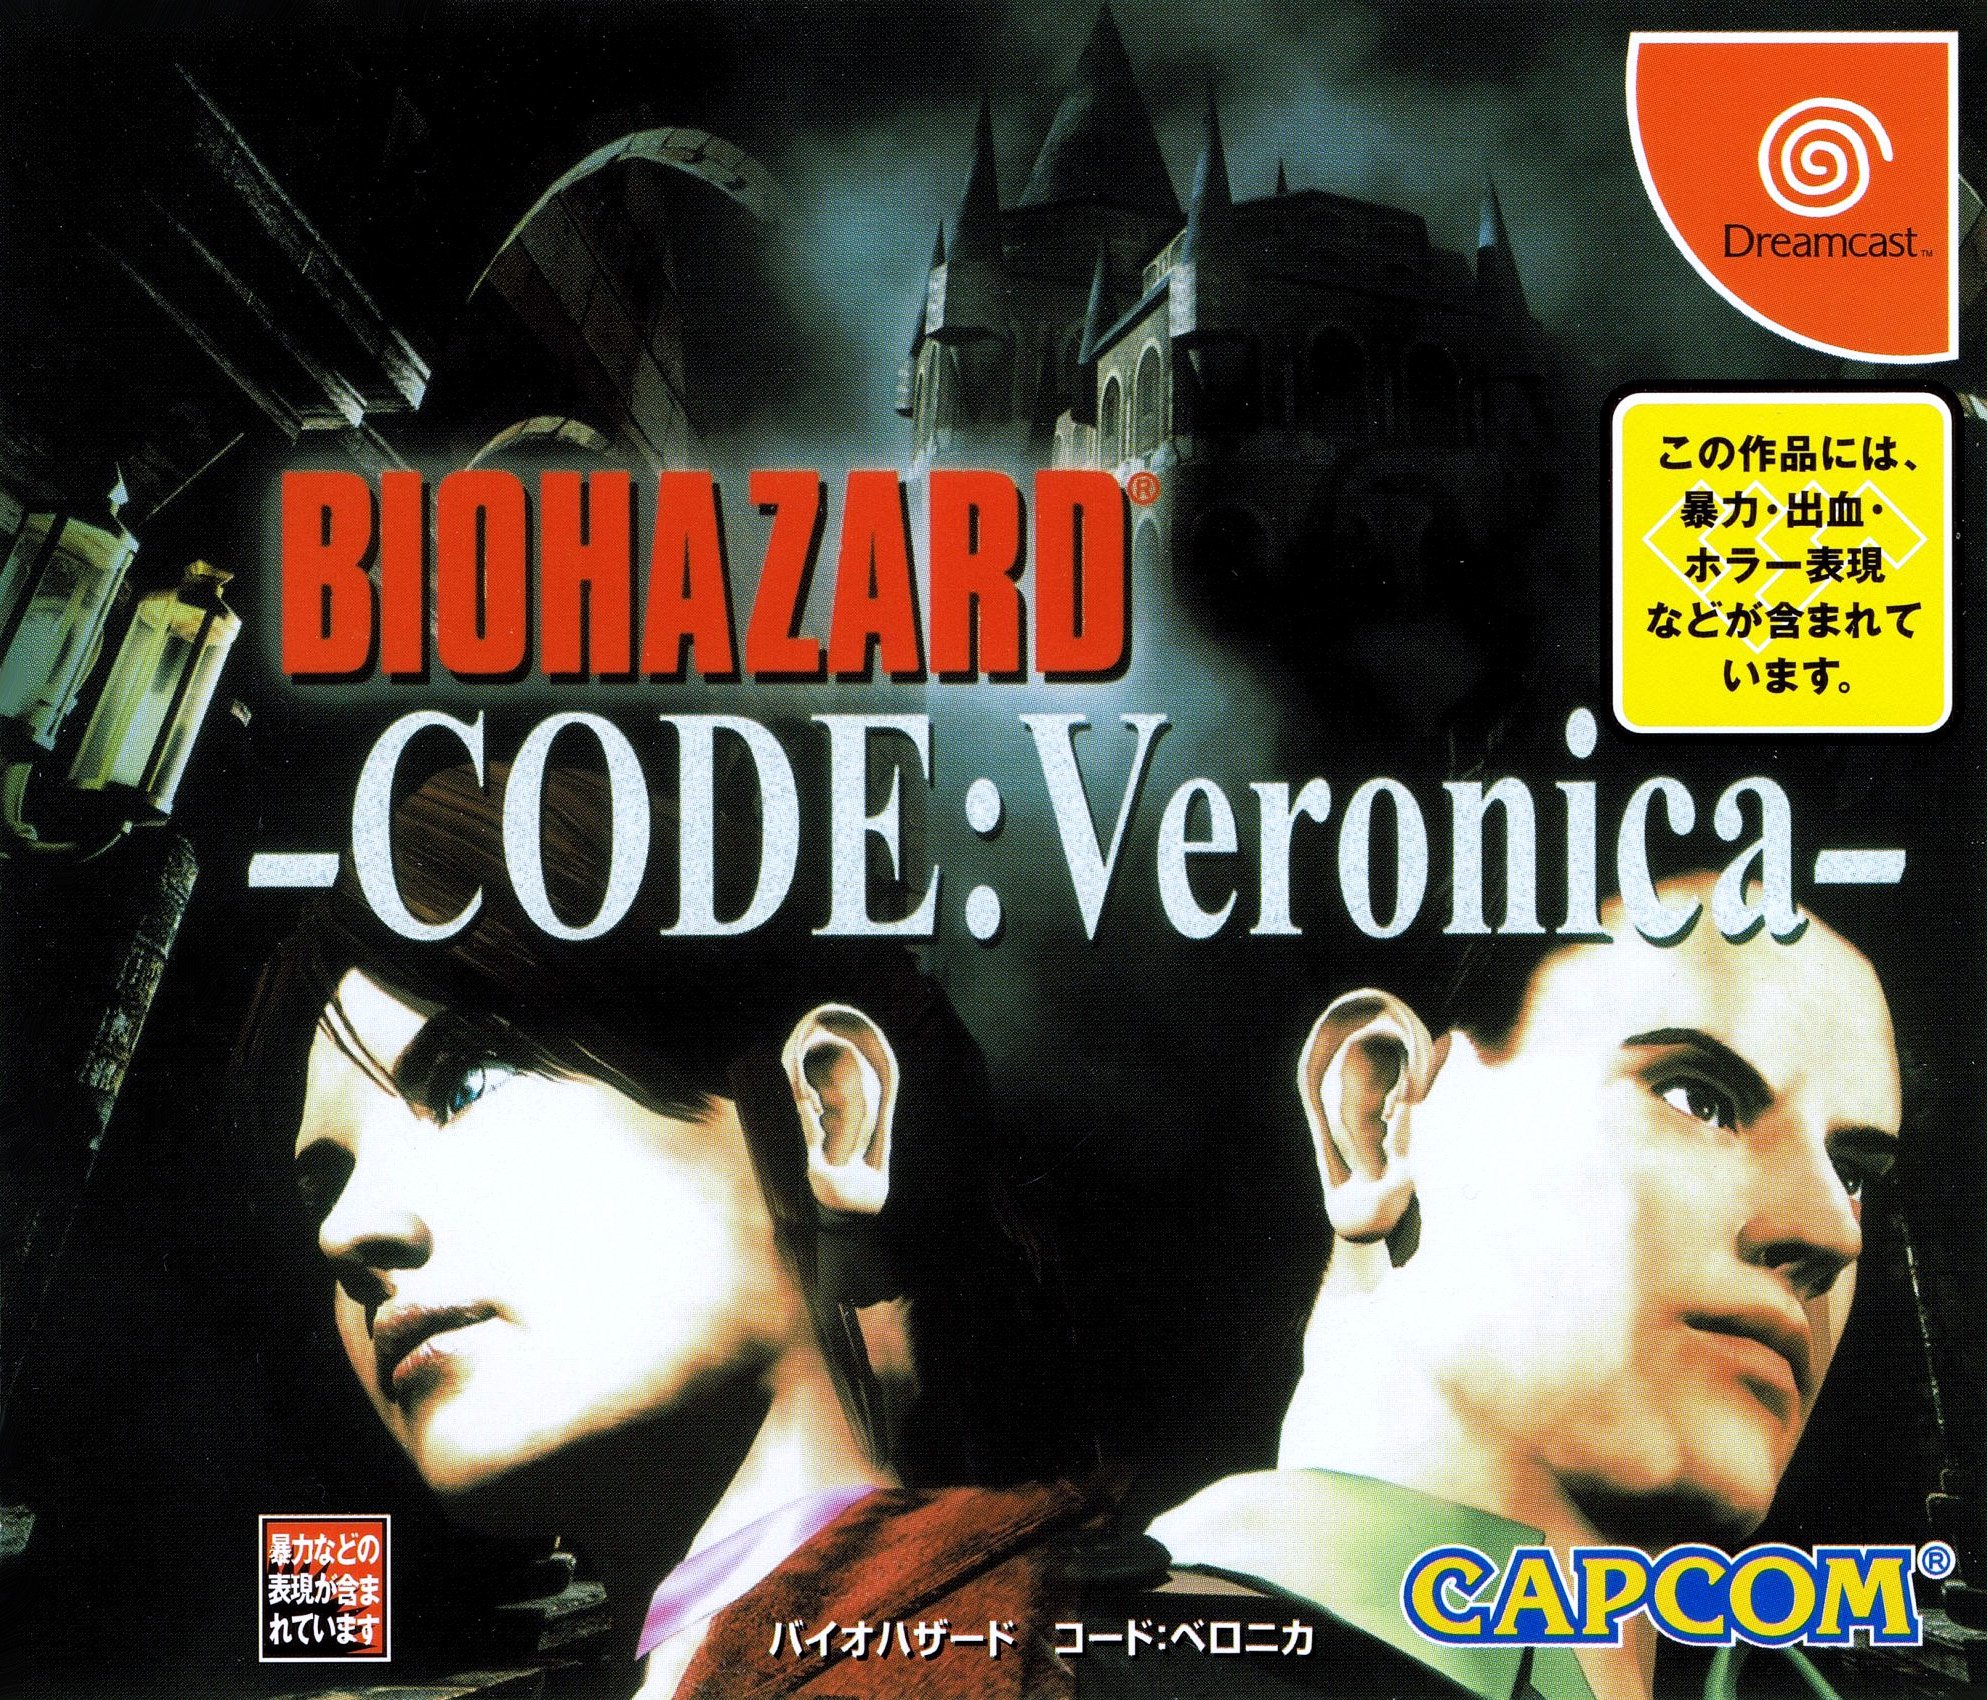 BioHazard CODE:Veronica